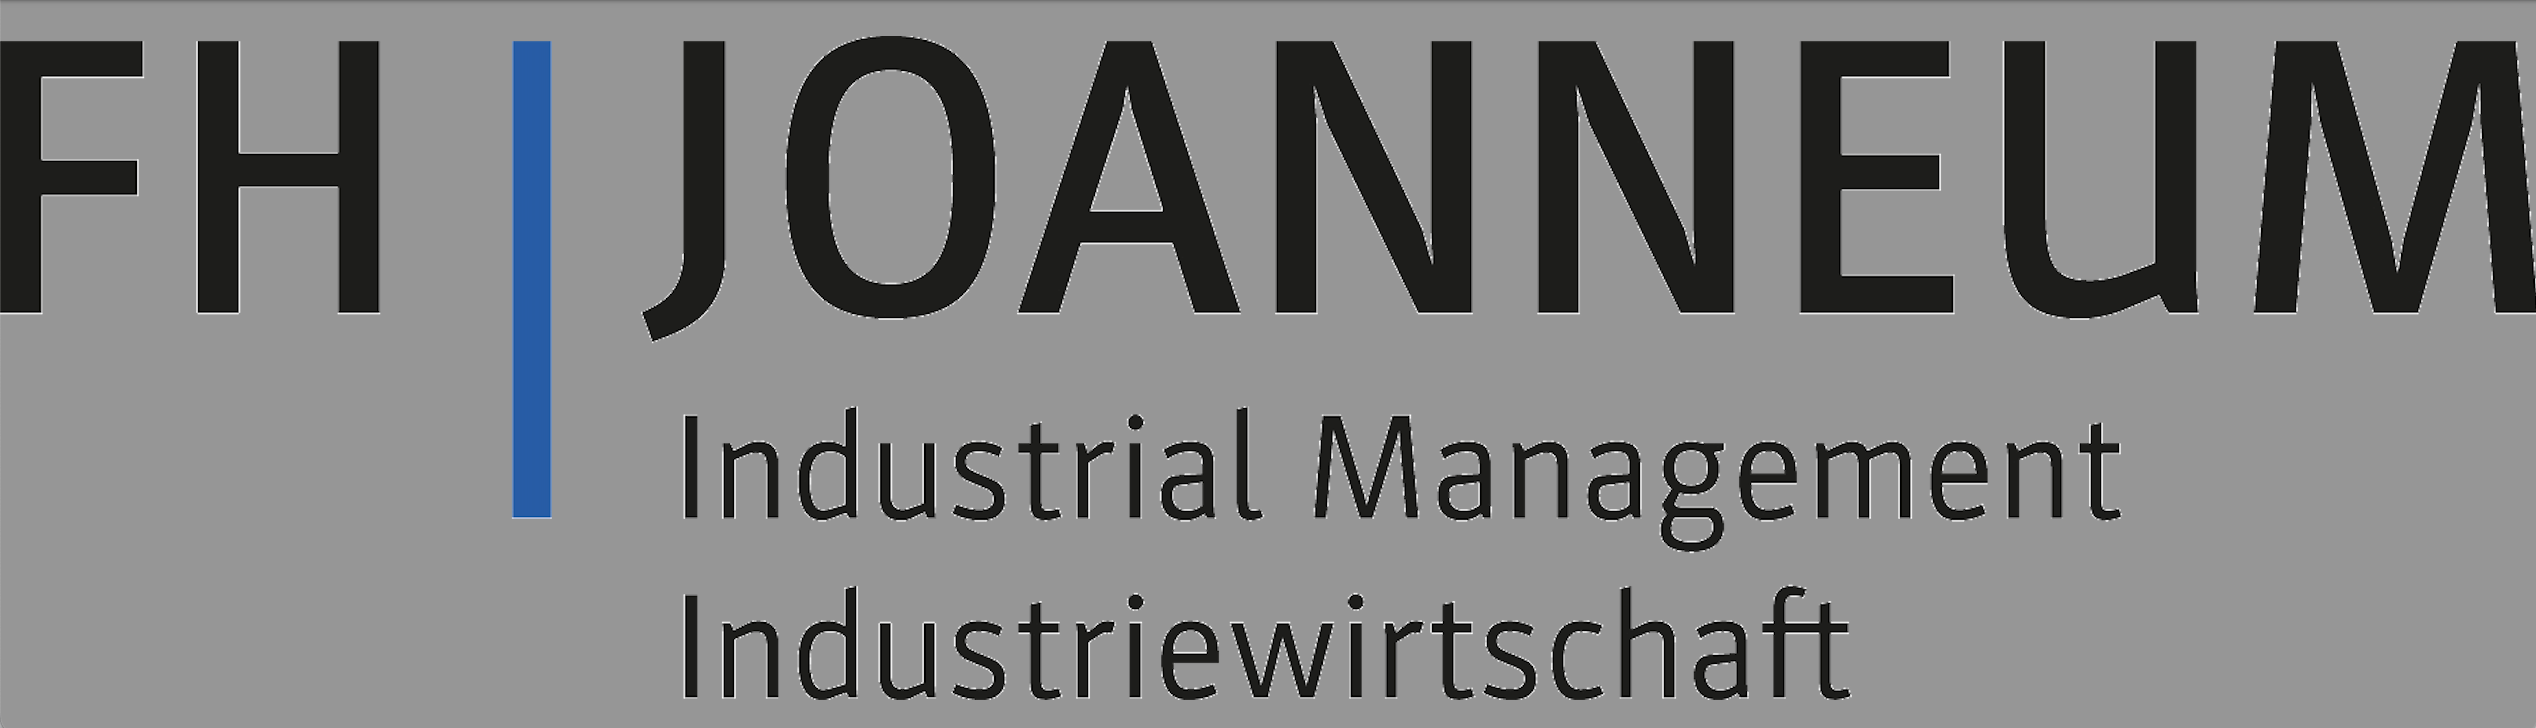 Institut Industrial Management - FH JOANNEUM